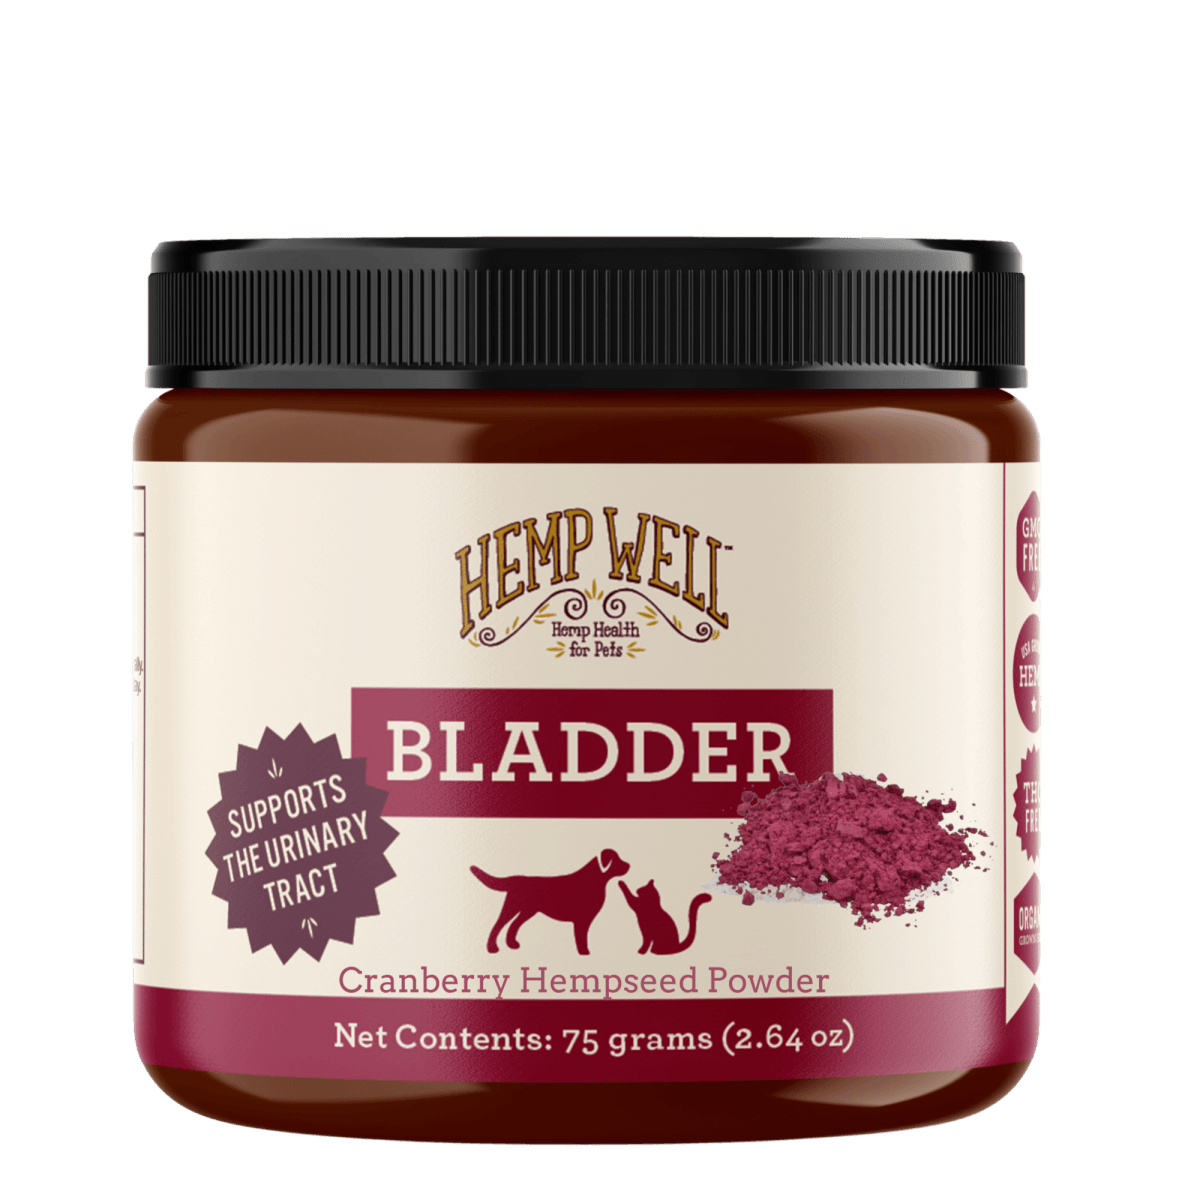 Bladder Support For Dogs & Cats - Hemp Well bladder cat dog